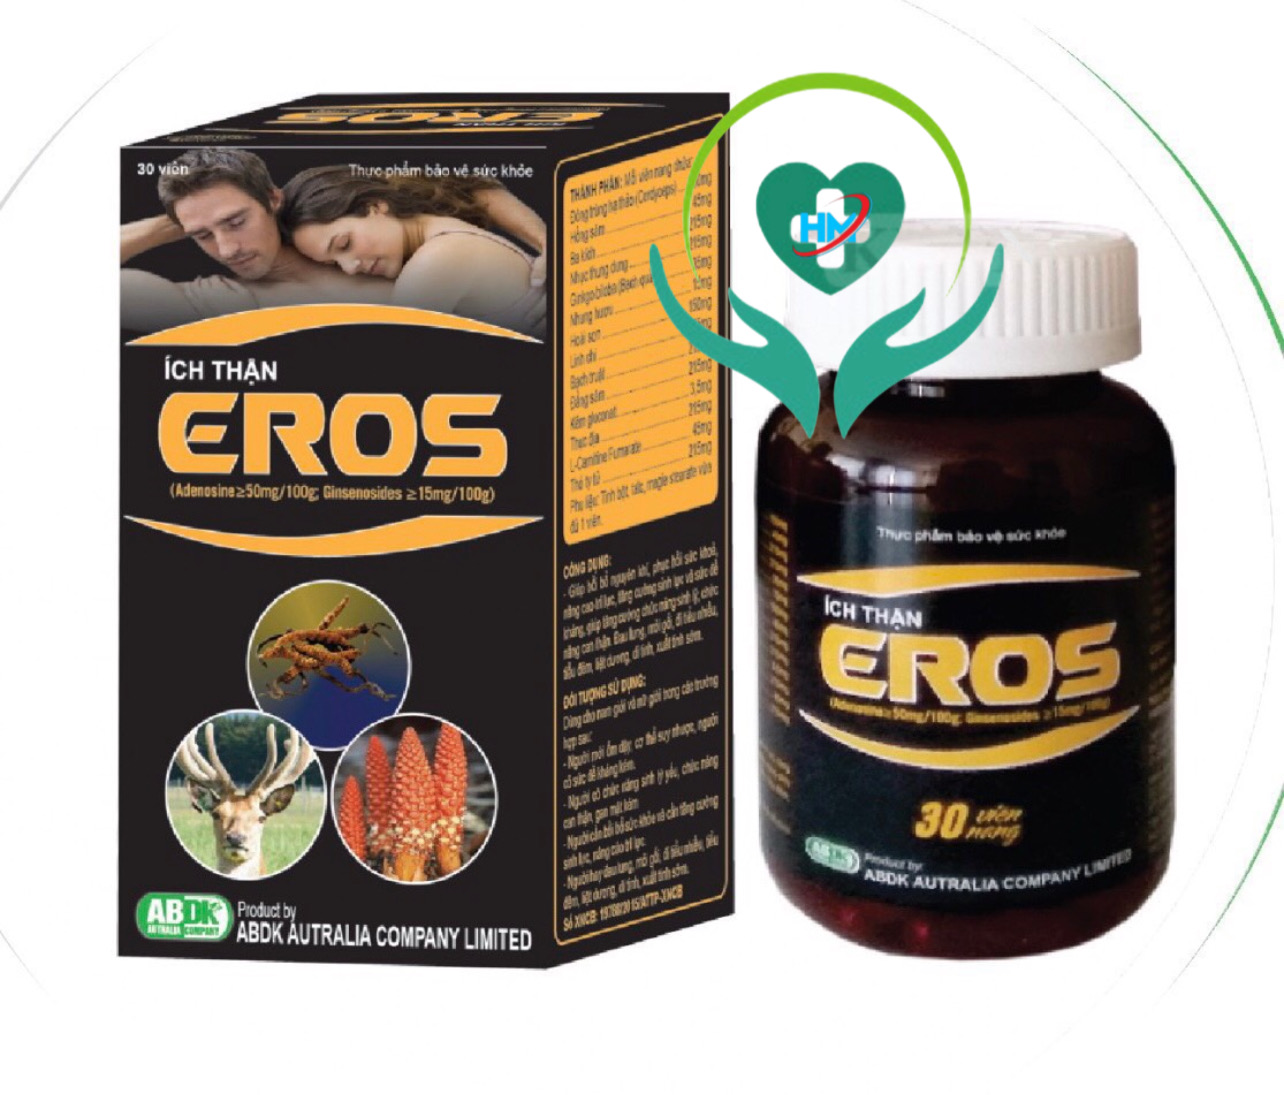 ￼ÍCH THẬN EROS - Hộp 30 Viên -tăng cường sinh lý, phục hồi chức năng thận, tiểu đêm, đau lưng, Vinaphar